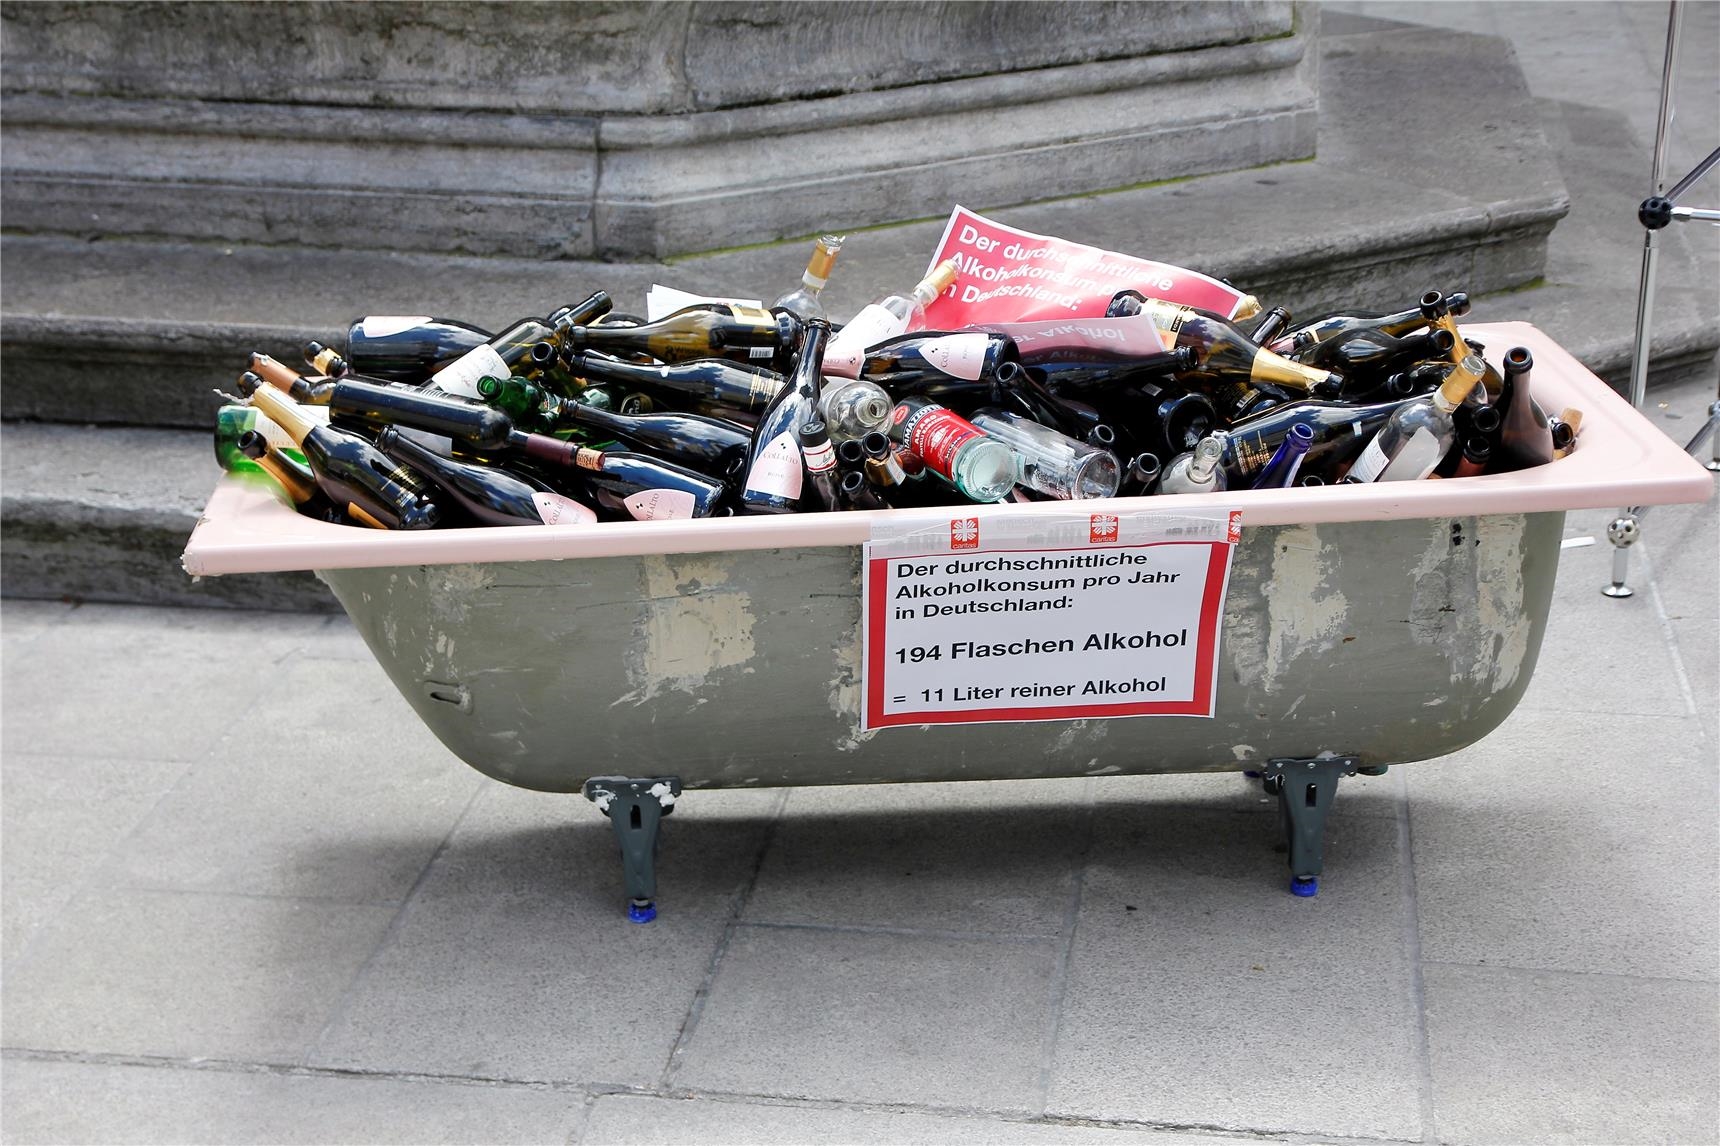 Das Foto zeigt eine Badewanne angefüllt mit 194 unterschiedlichen Alkoholflaschen. Sie entsprechen dem durchschnittlichen Alkoholkonsum pro Jahr in Deutschland. 